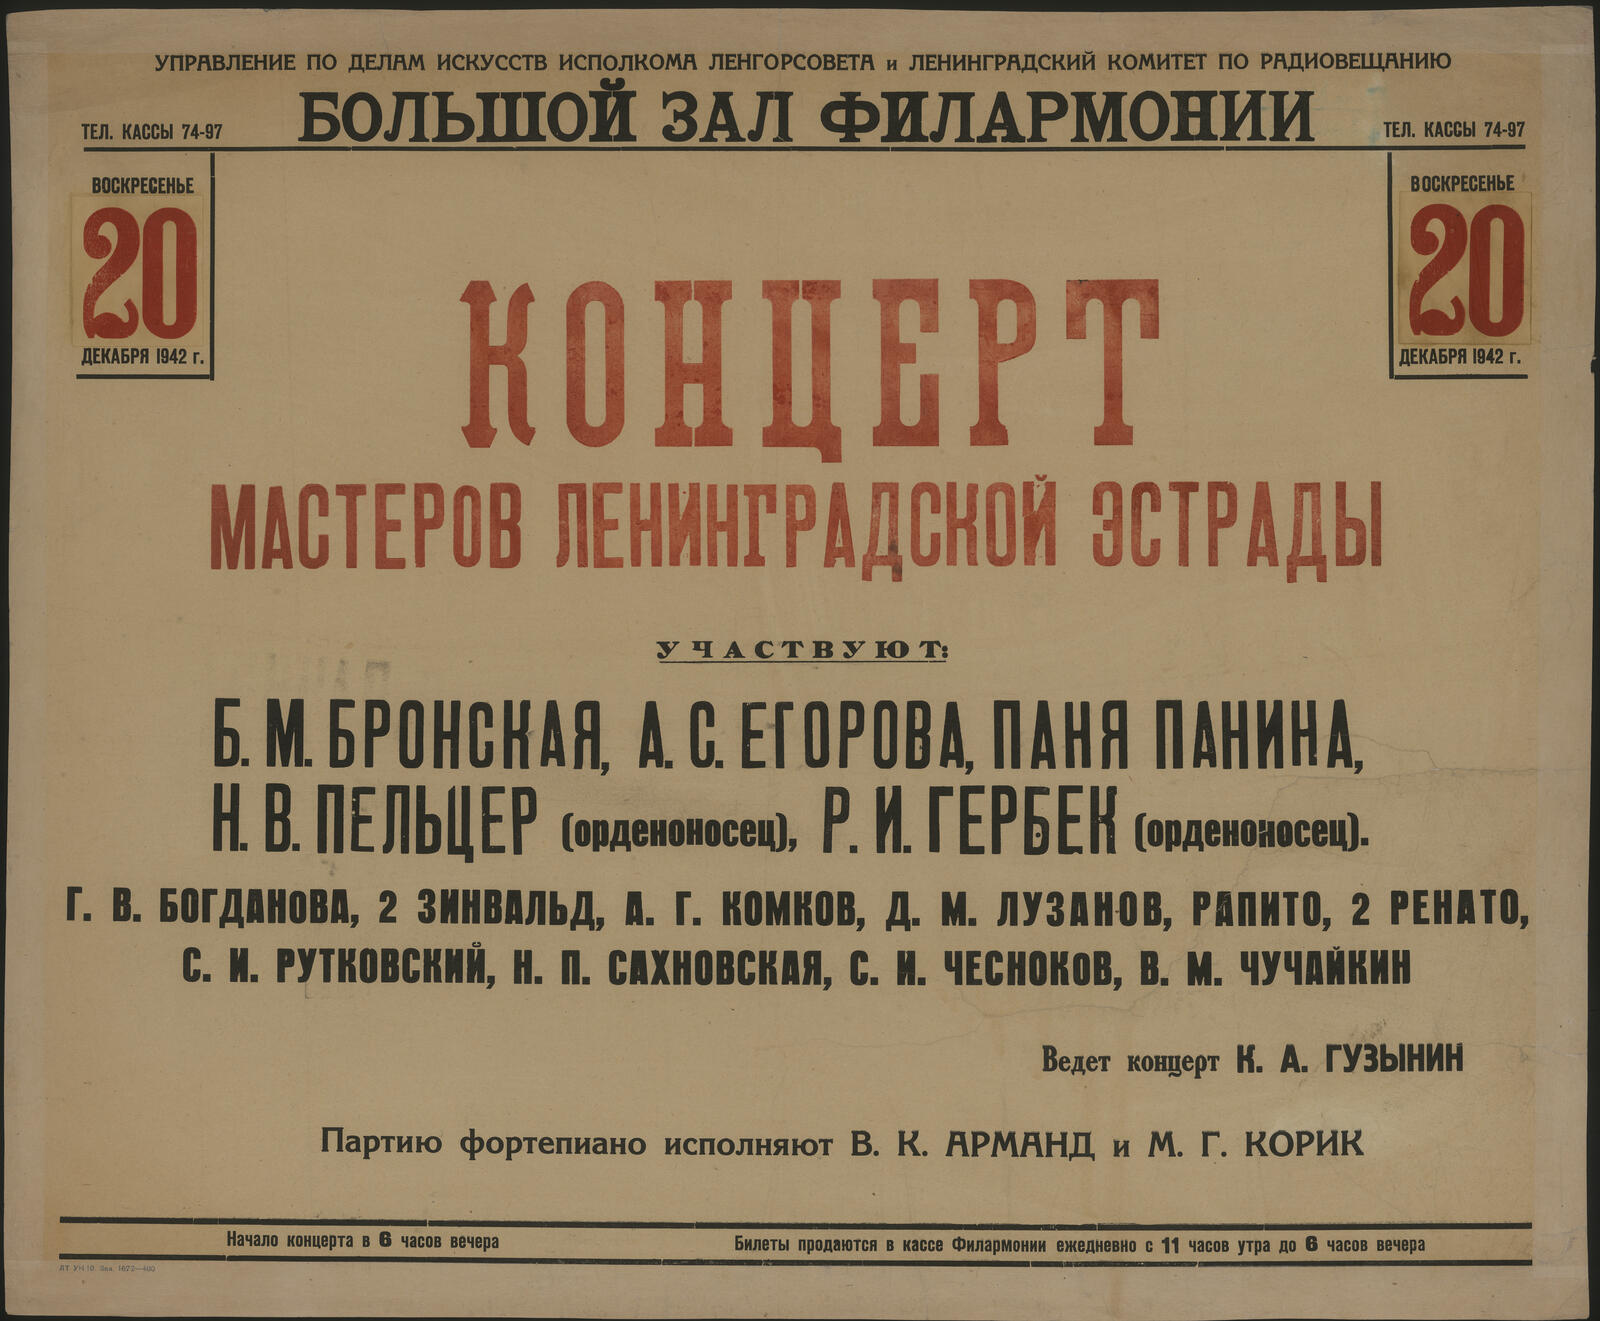 Изображение книги Концерт мастеров Ленинградской эстрады, воскресенье 20 декабря 1942 г.